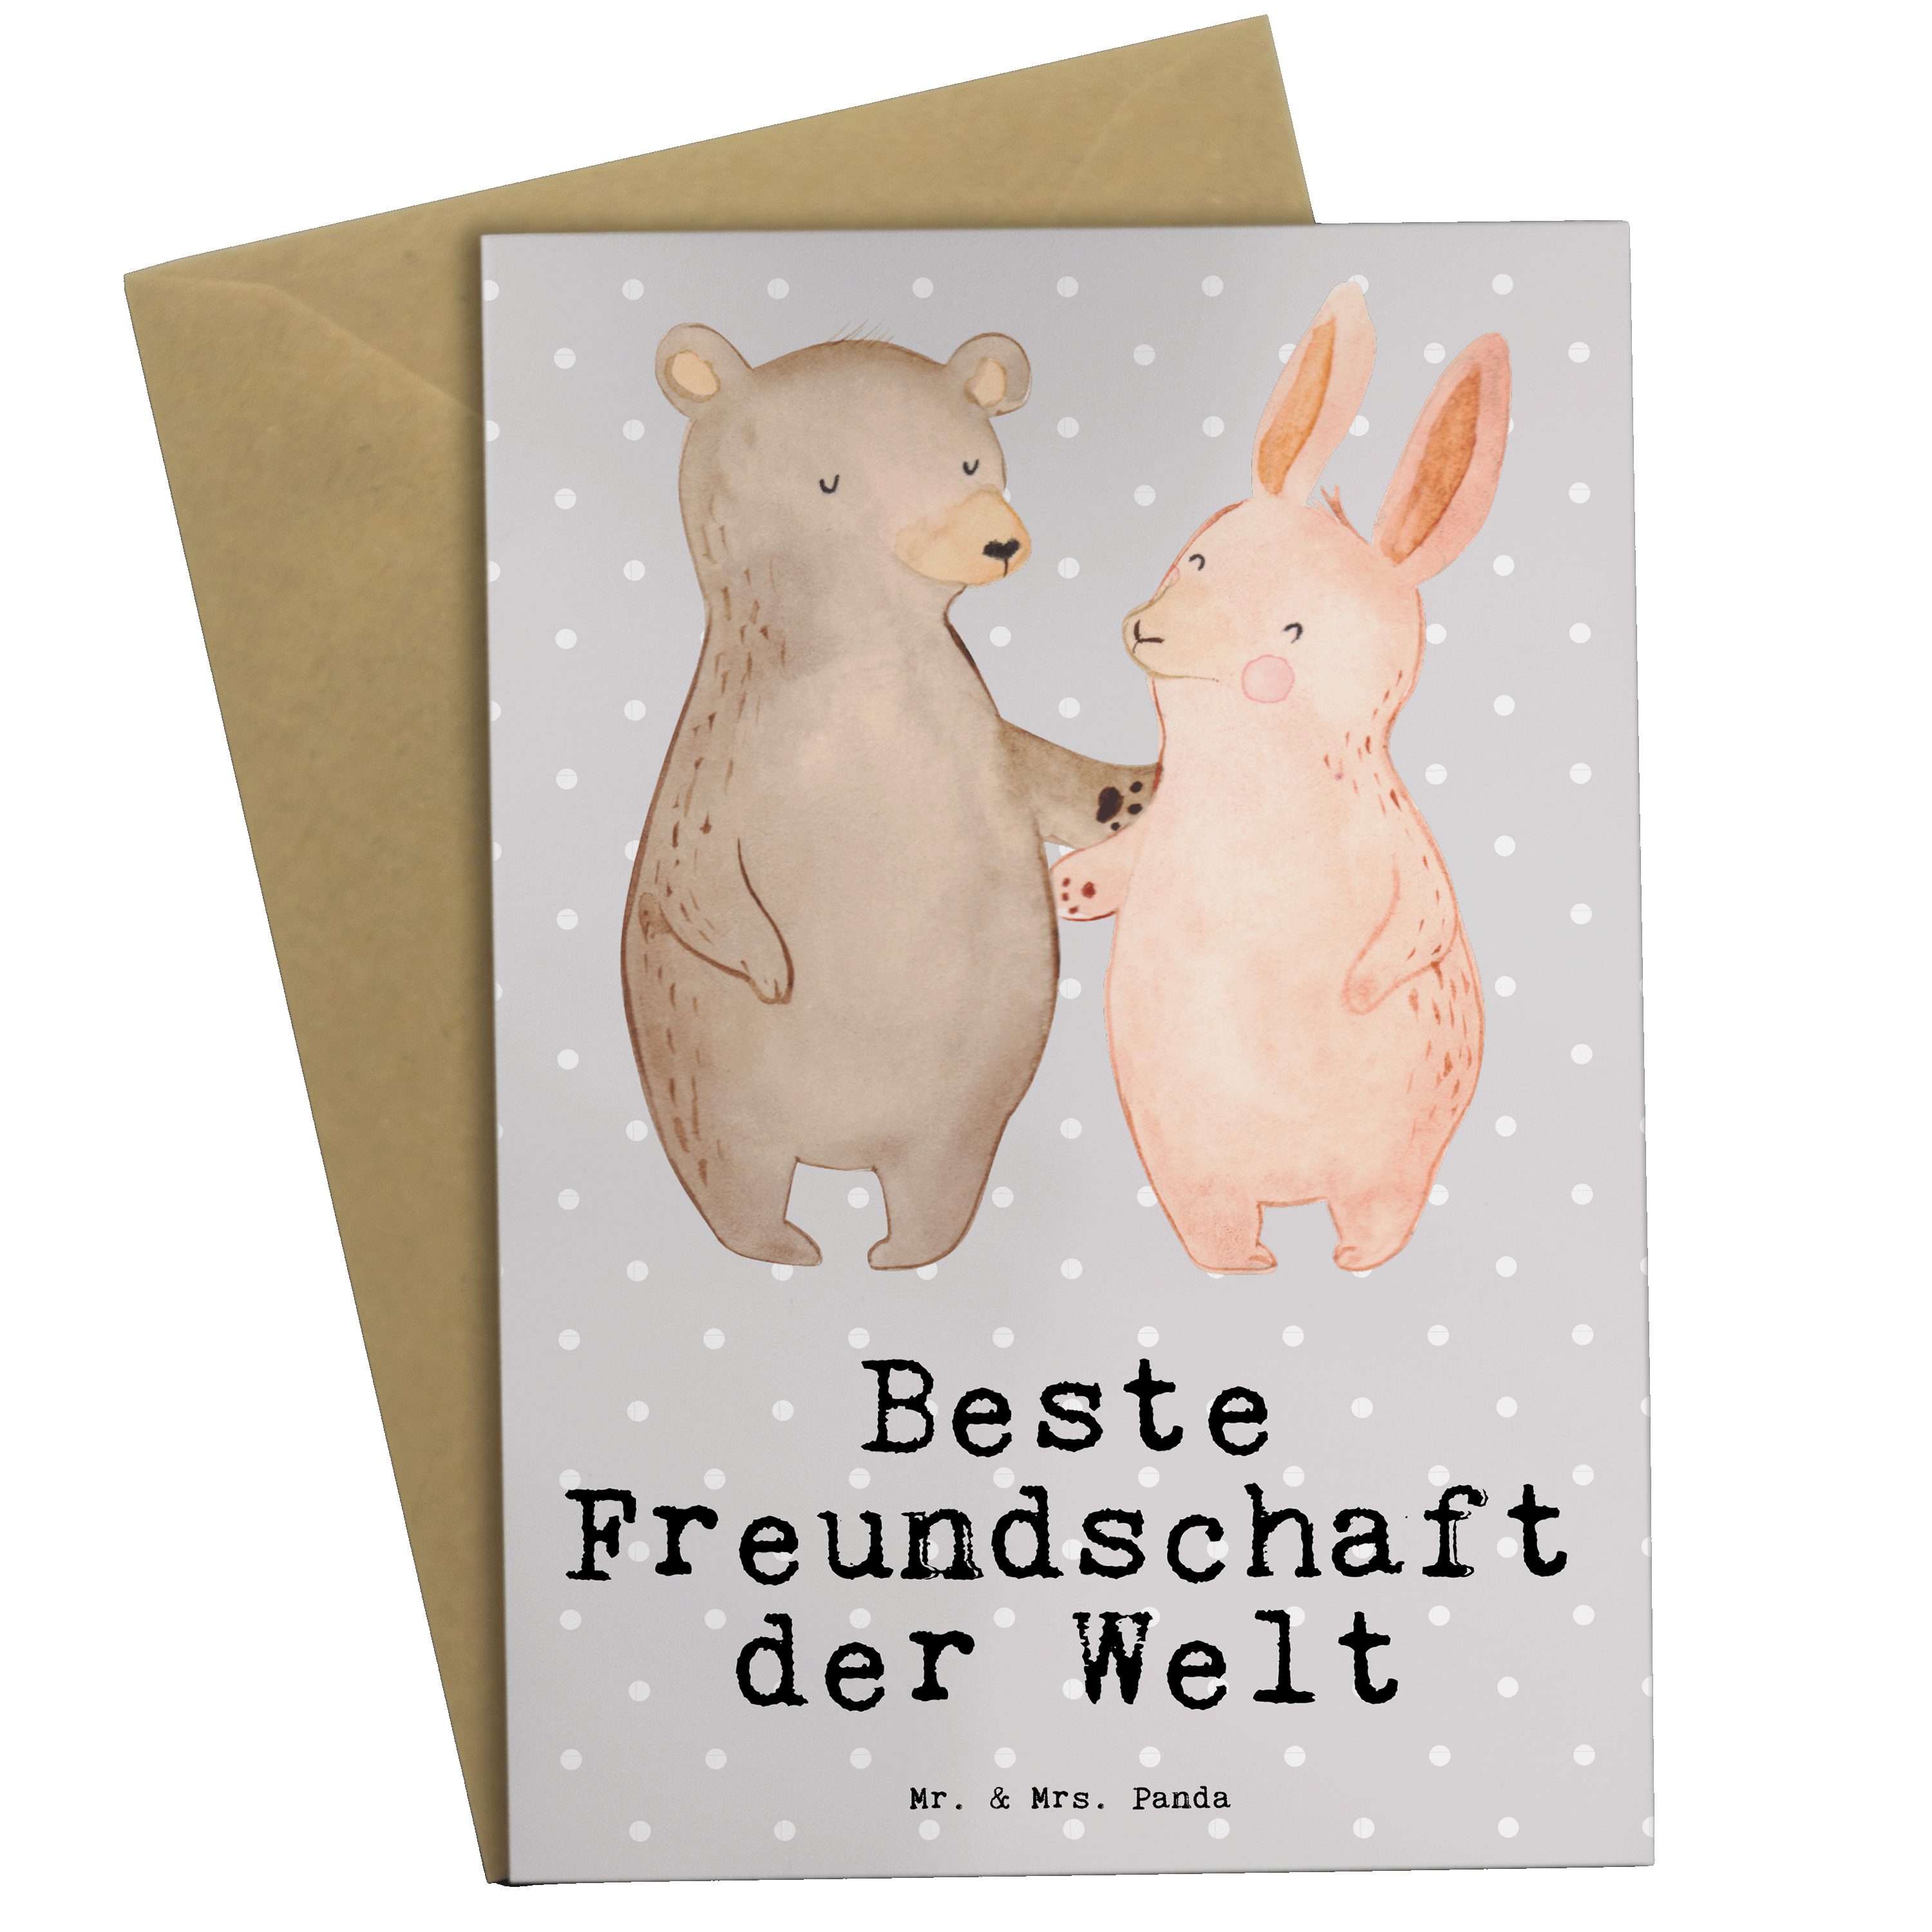 Mr. & Mrs. Panda Grußkarte Hase Beste Freundschaft der Welt - Grau Pastell - Geschenk, Geburtsta